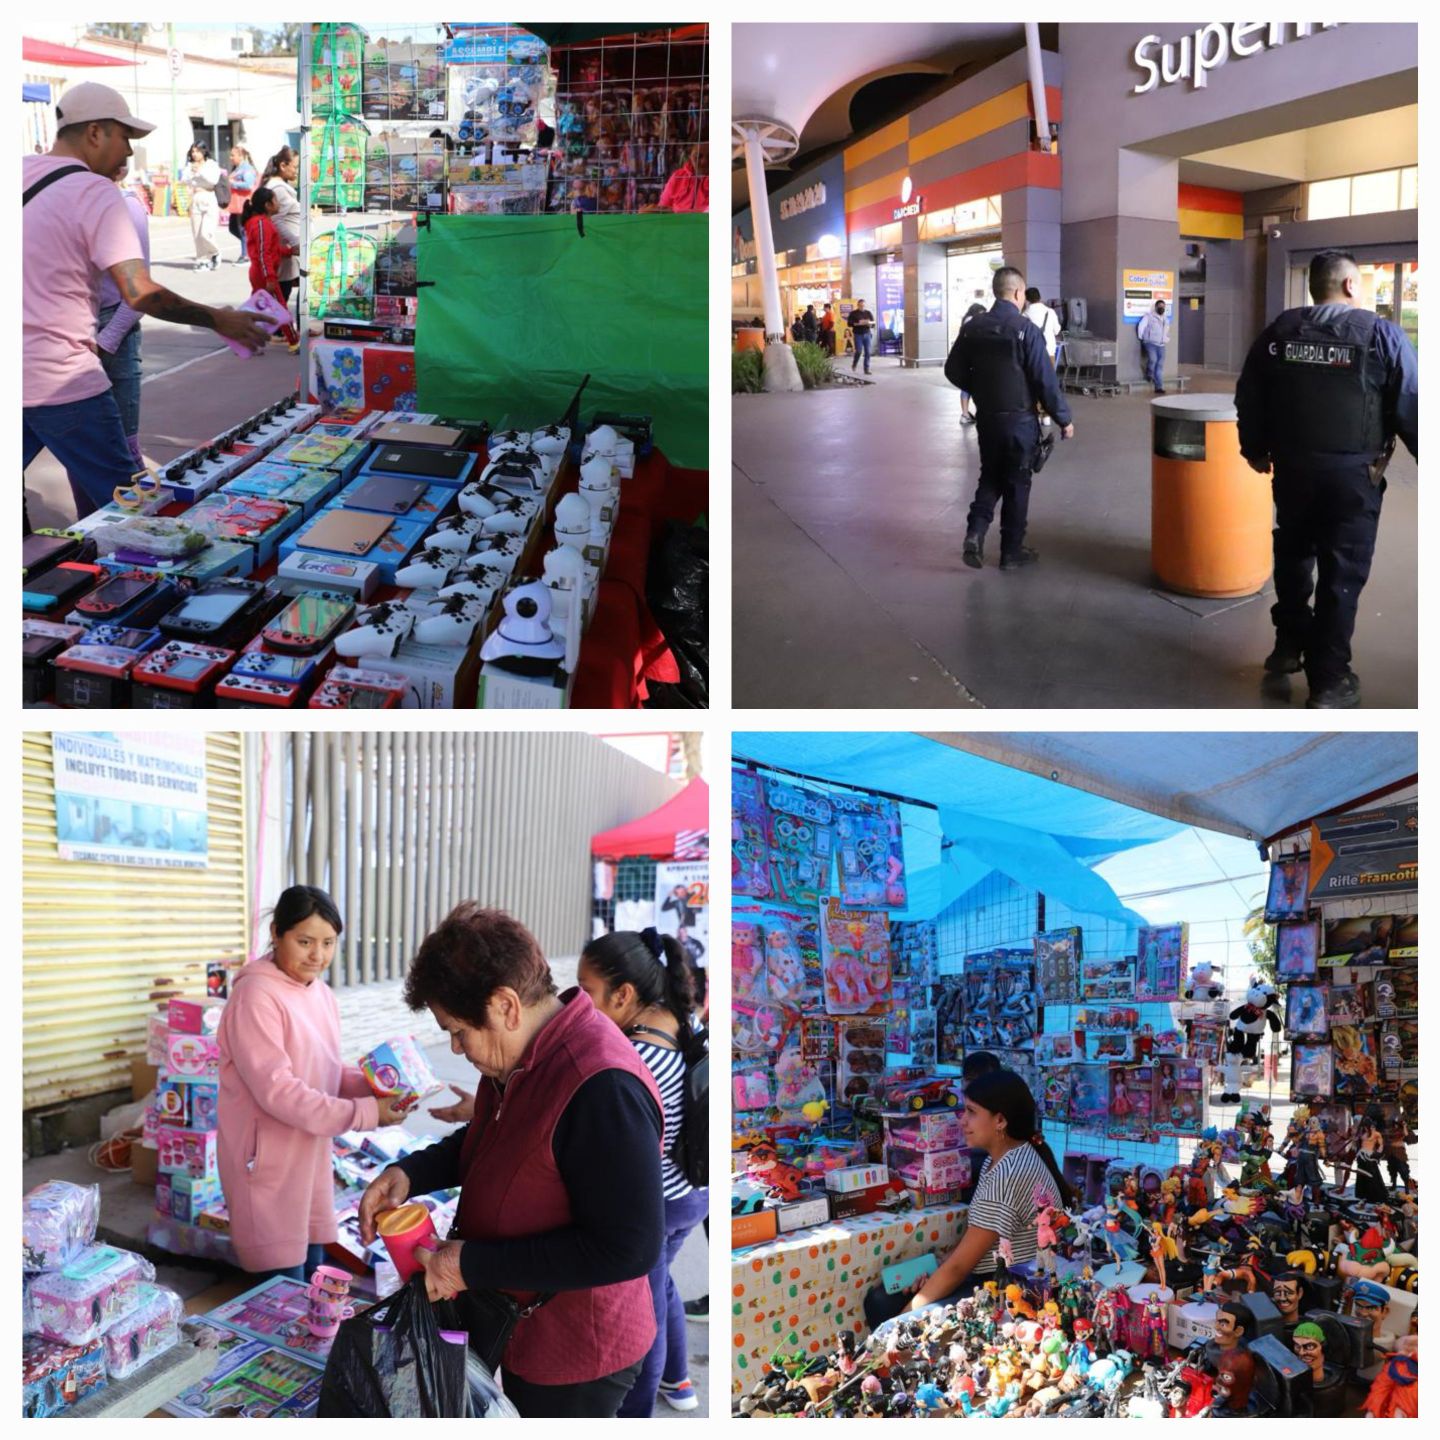 La Guardia Civil de Tecámac Vigilará los Nueve Bazares de Juguetes, 10 plazas, centros comerciales y bancos